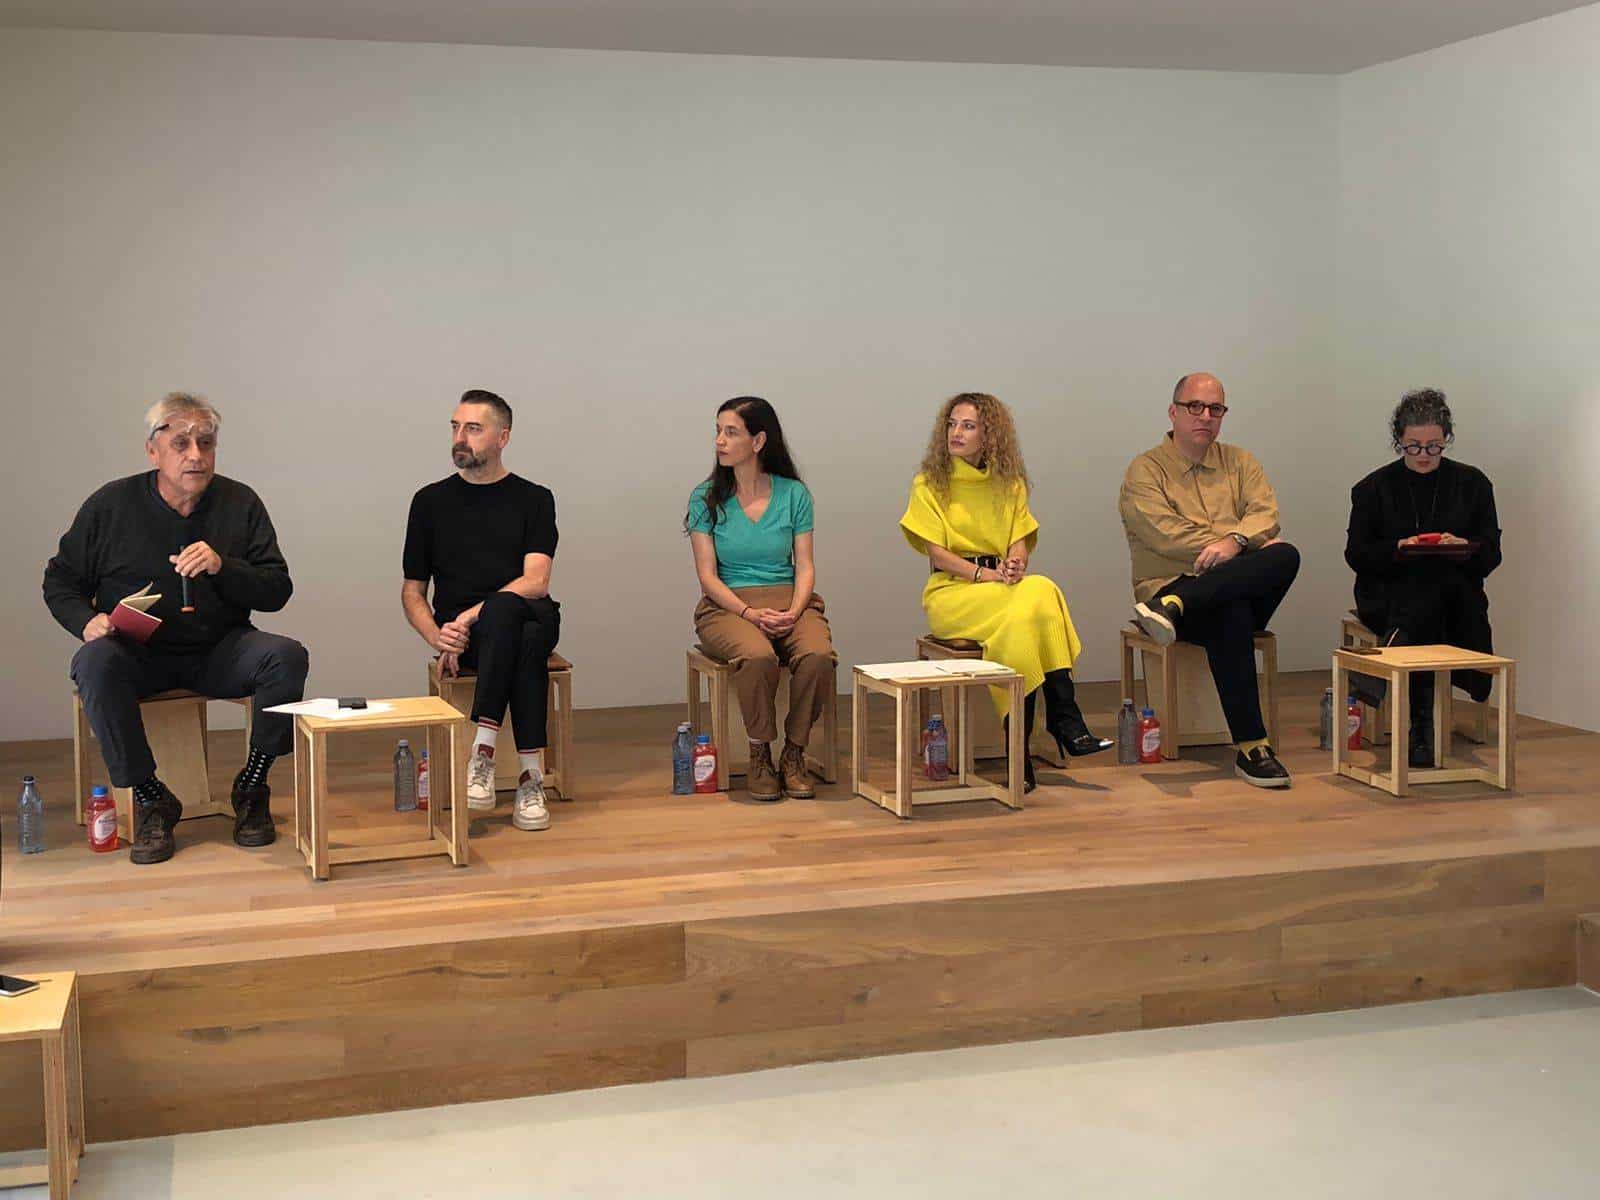 Nace Plataforma, Arte Contemporáneo: nueva oferta cultural en Guadalajara